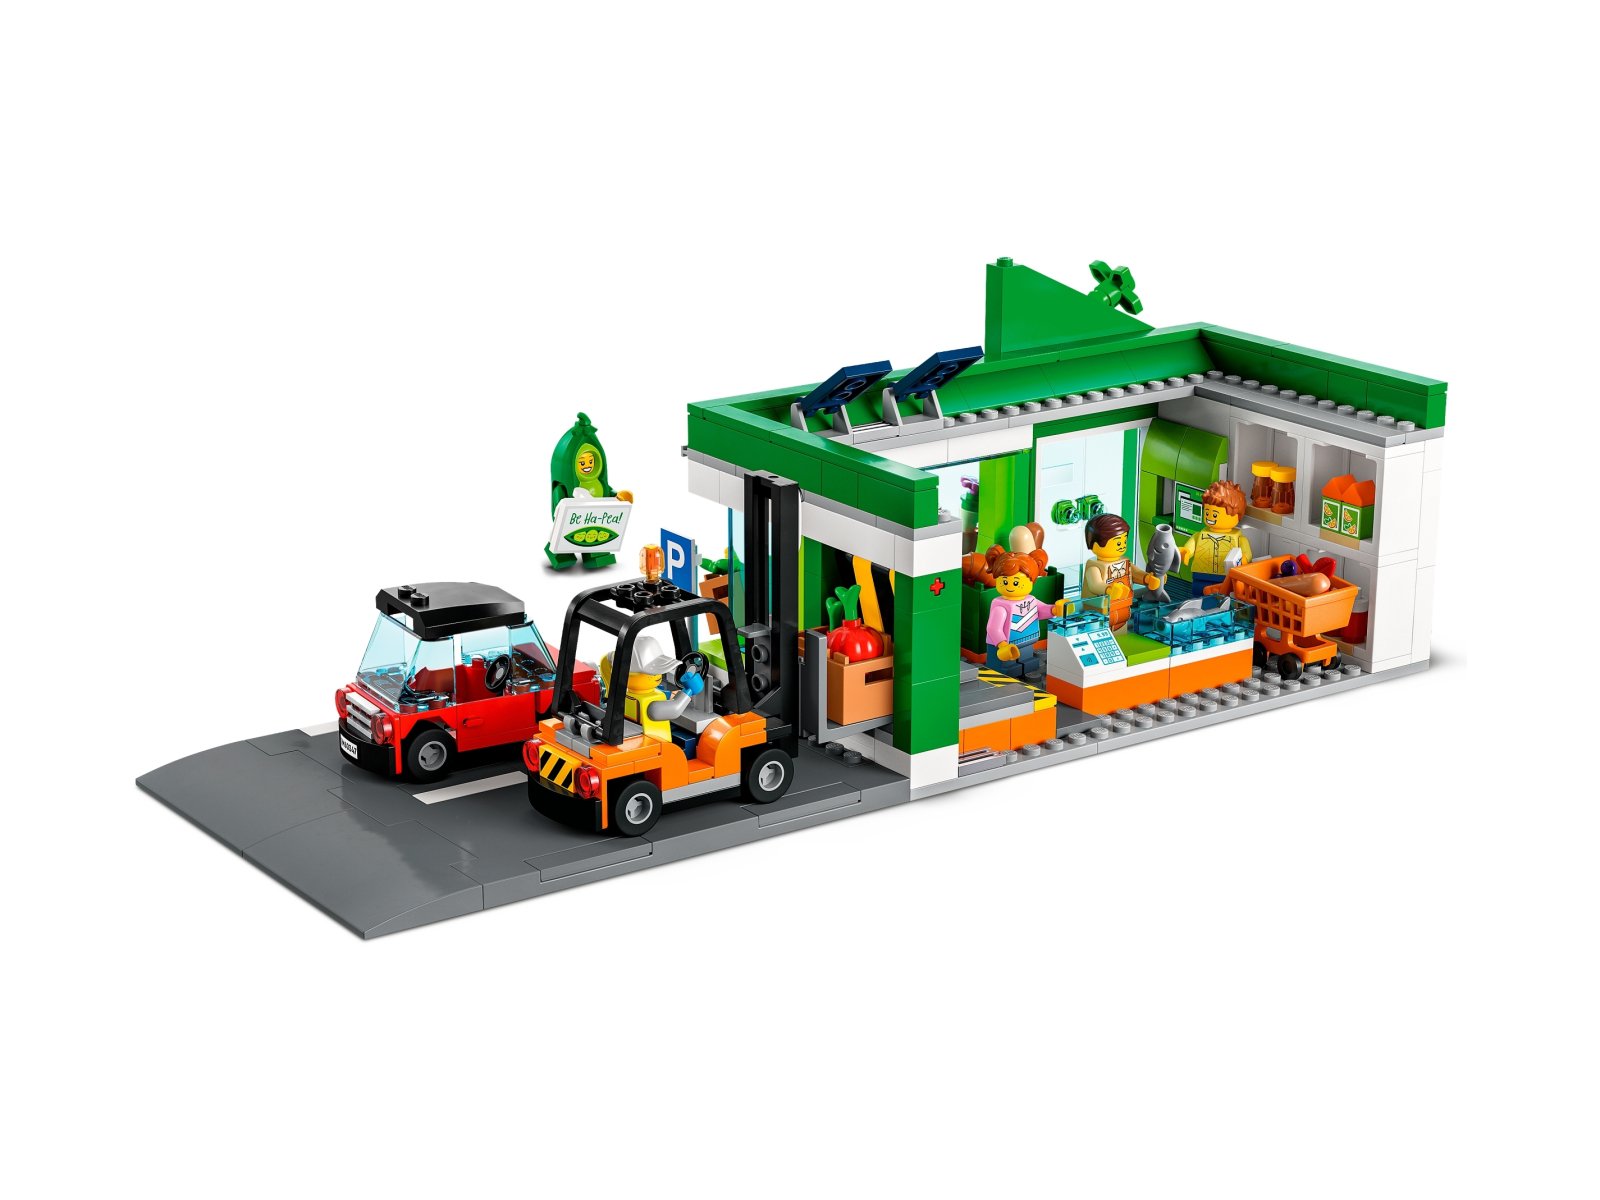 LEGO 60347 City Sklep spożywczy